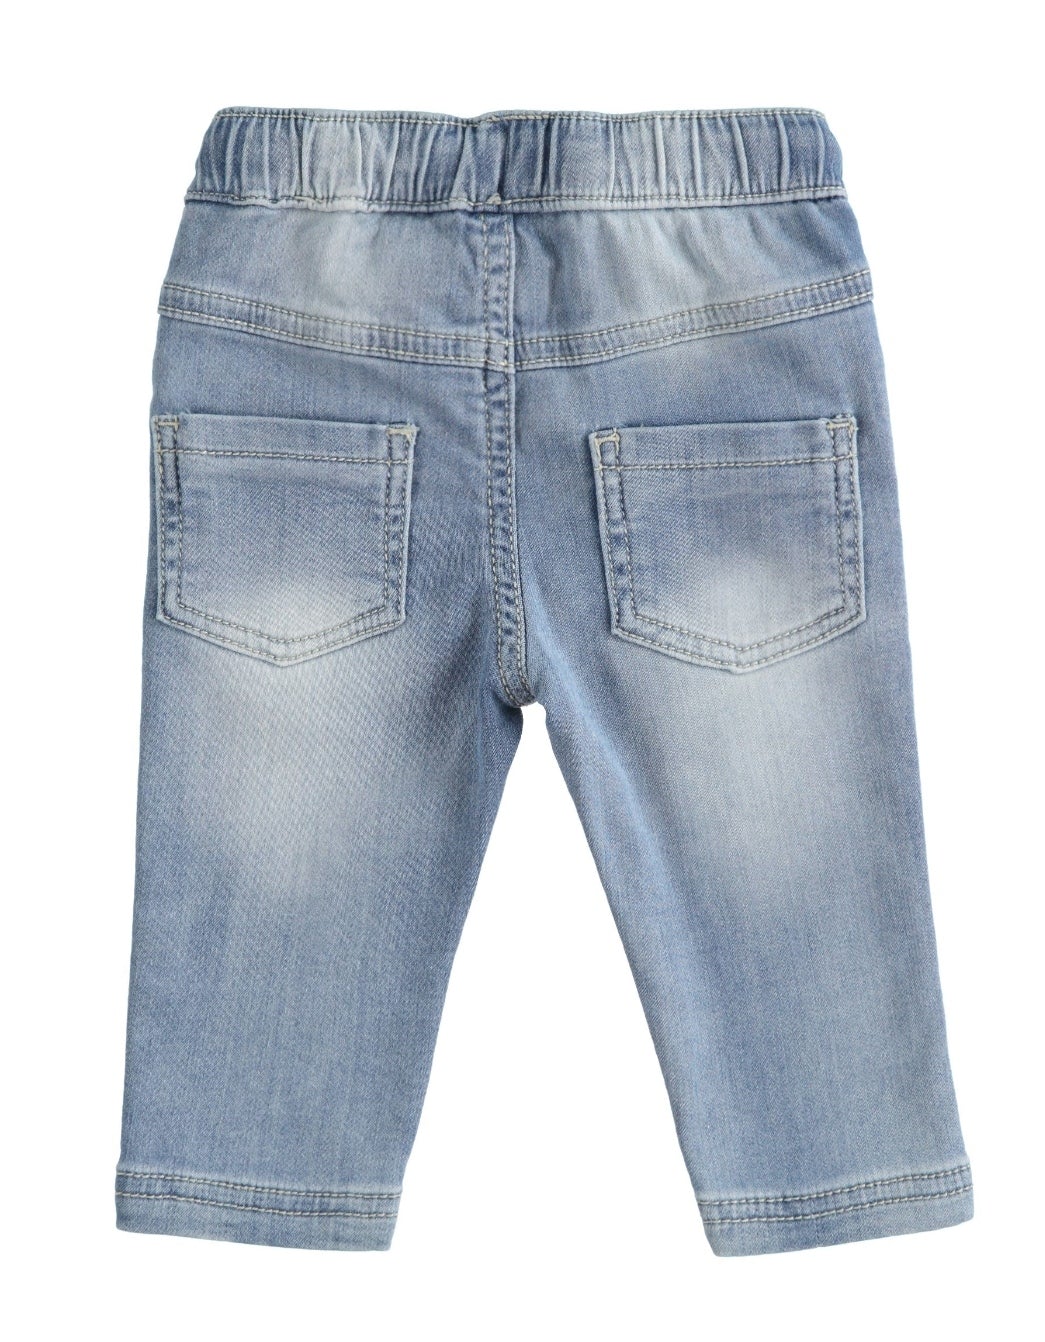 Jeans morbido bimbo - Coccole e Ricami |email: info@coccoleericami.shop| P.Iva 09642670583